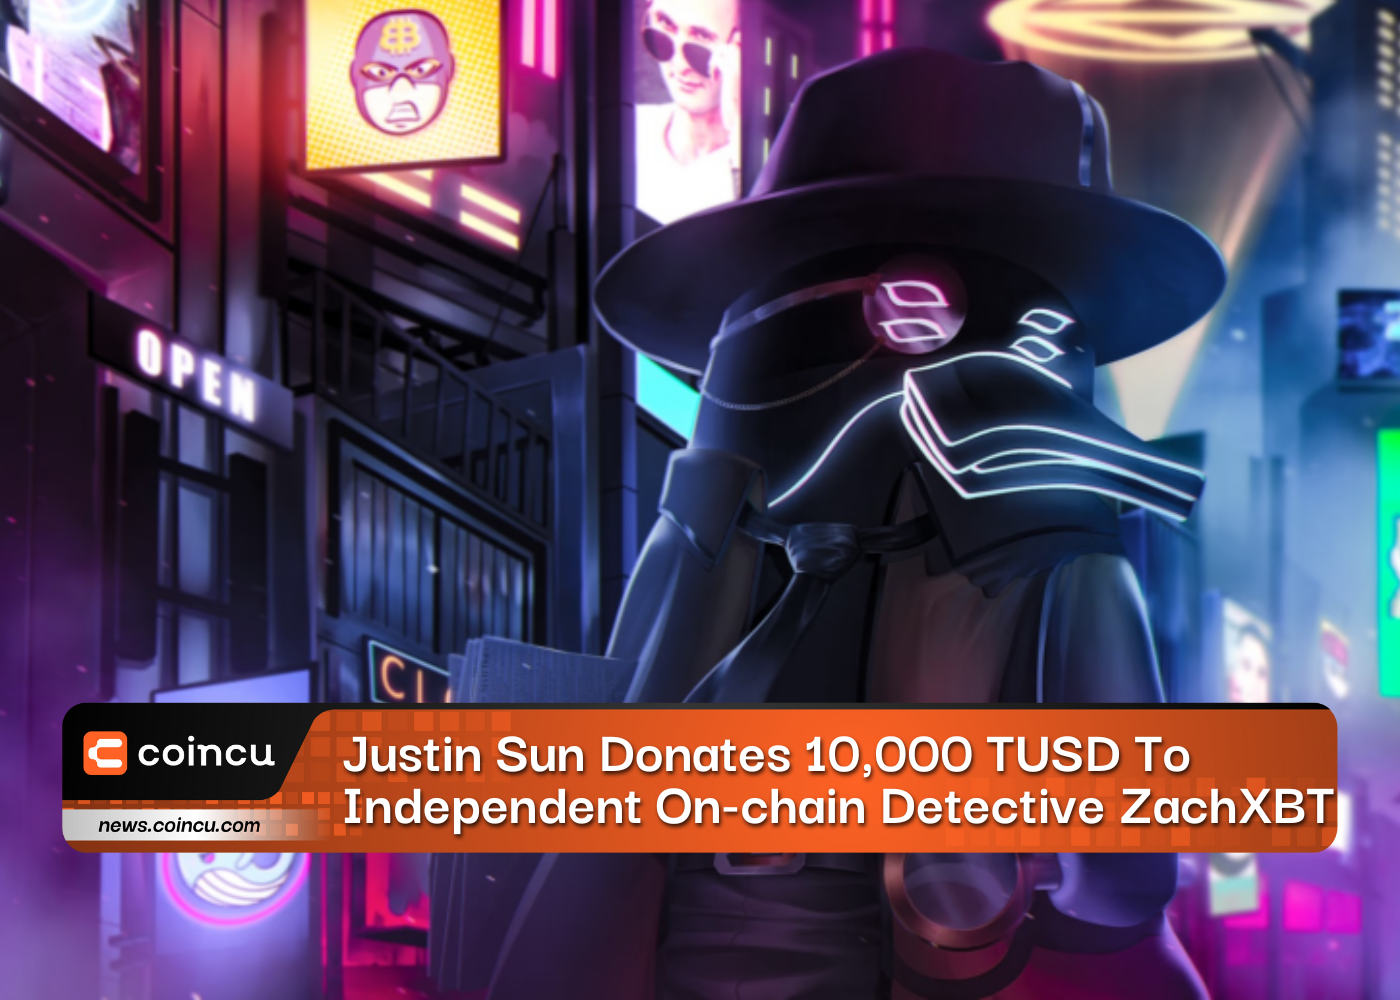 ジャスティン・サン、独立系オンチェーン探偵ZachXBTに10,000TUSDを寄付